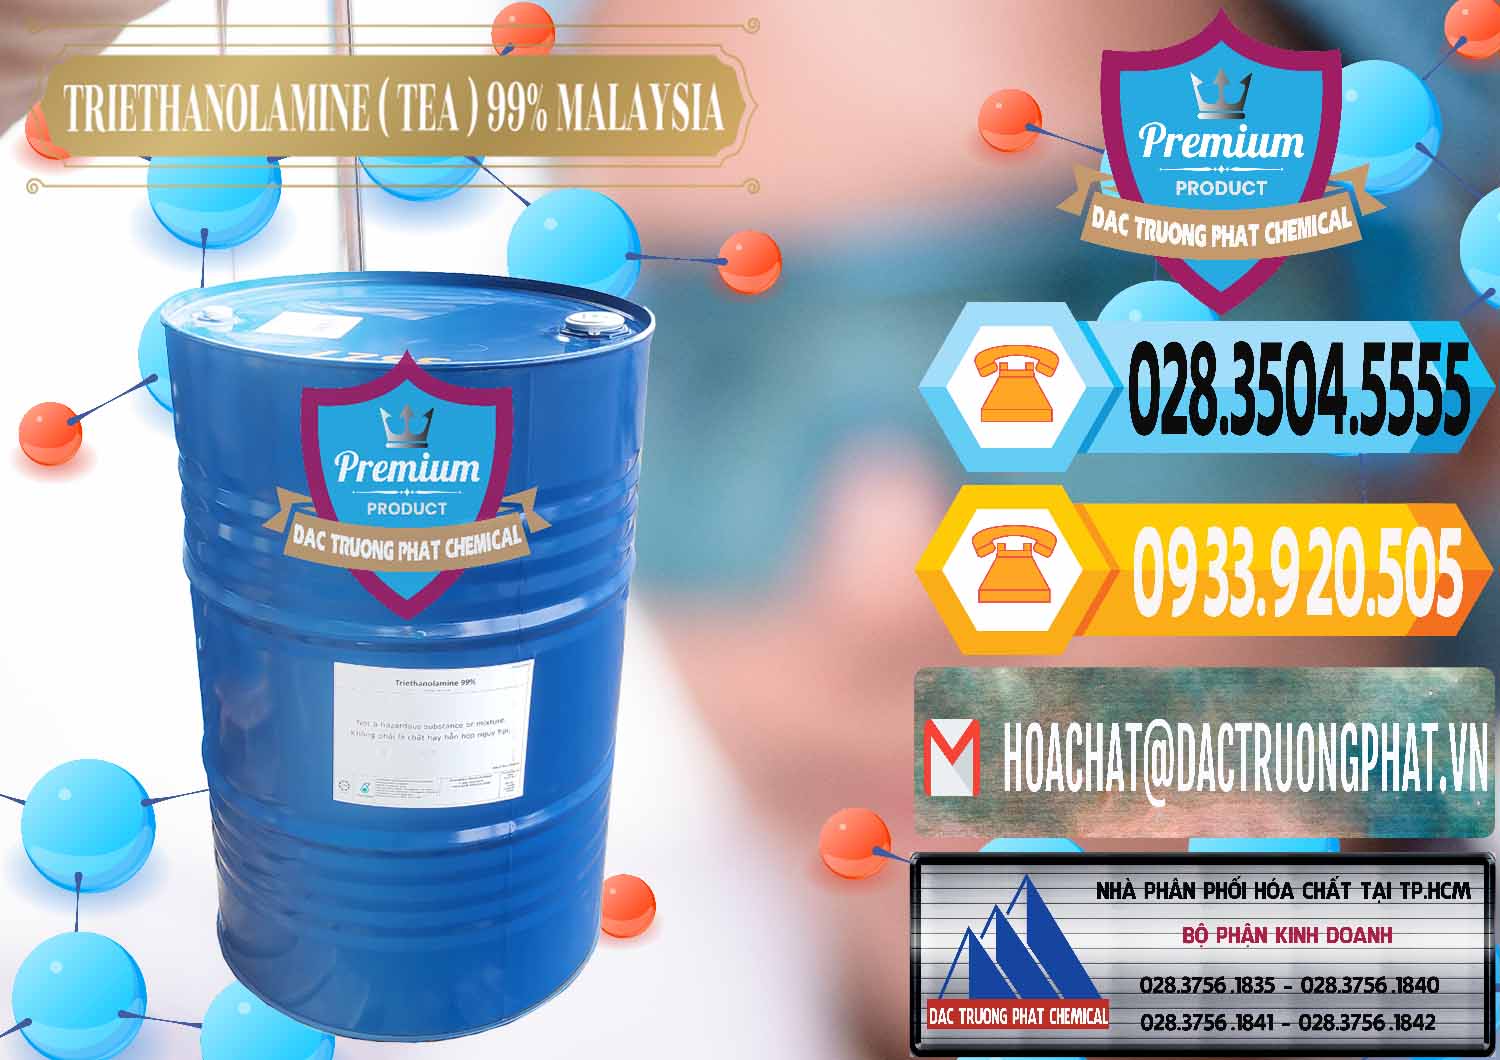 Đơn vị chuyên cung ứng và bán TEA - Triethanolamine 99% Mã Lai Malaysia - 0323 - Công ty chuyên kinh doanh ( phân phối ) hóa chất tại TP.HCM - hoachattayrua.net